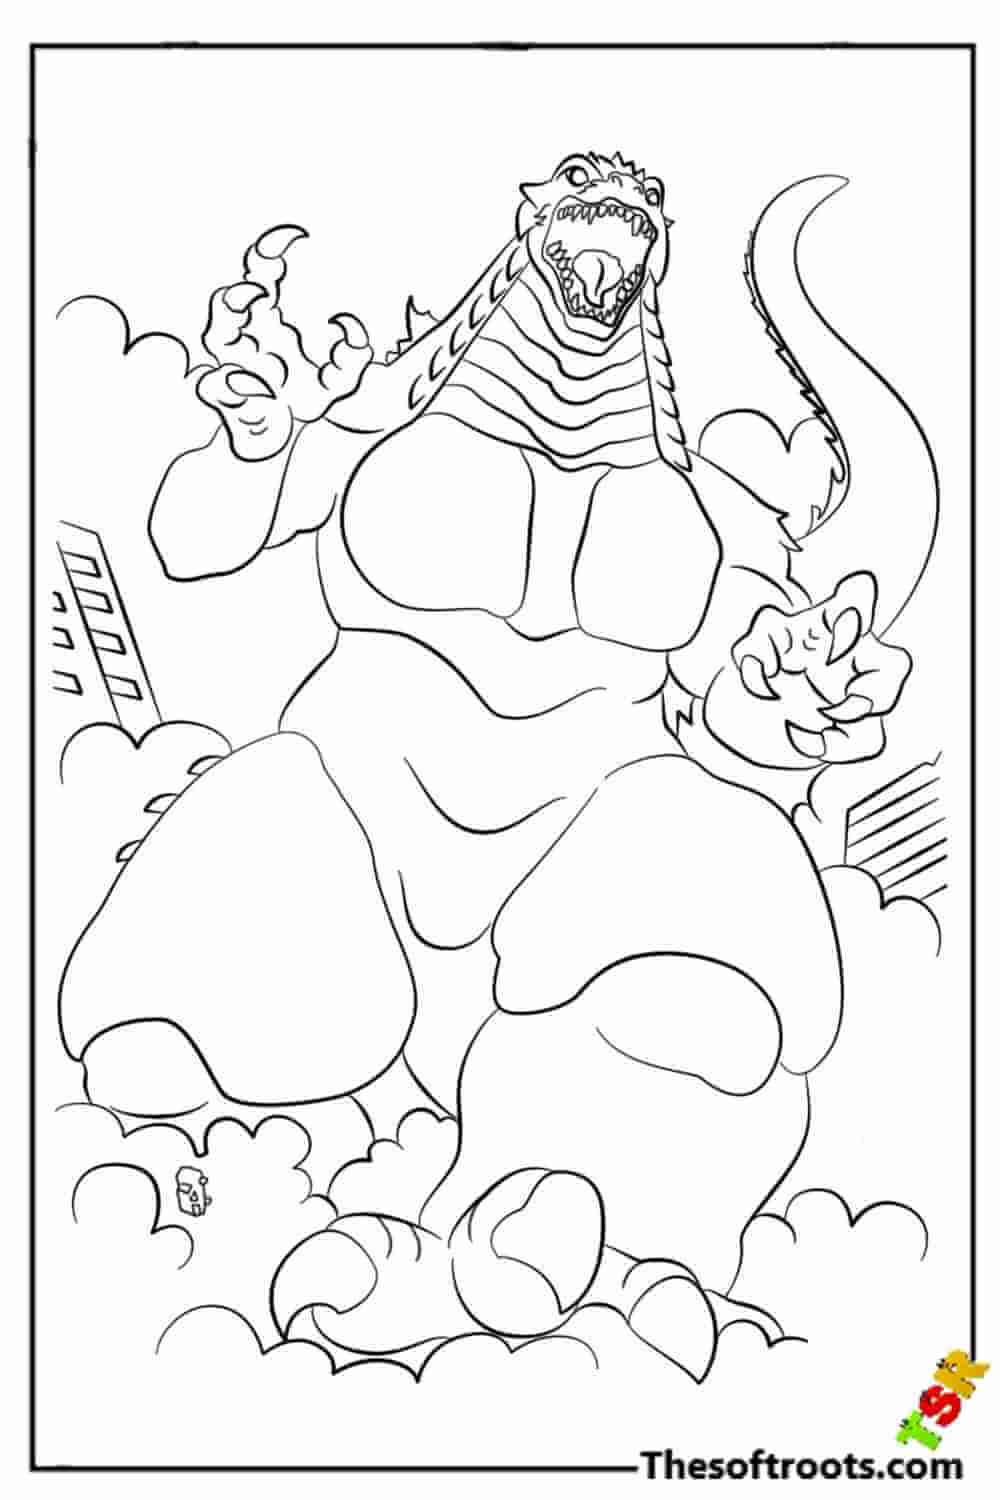 Godzilla Attacks coloring pages